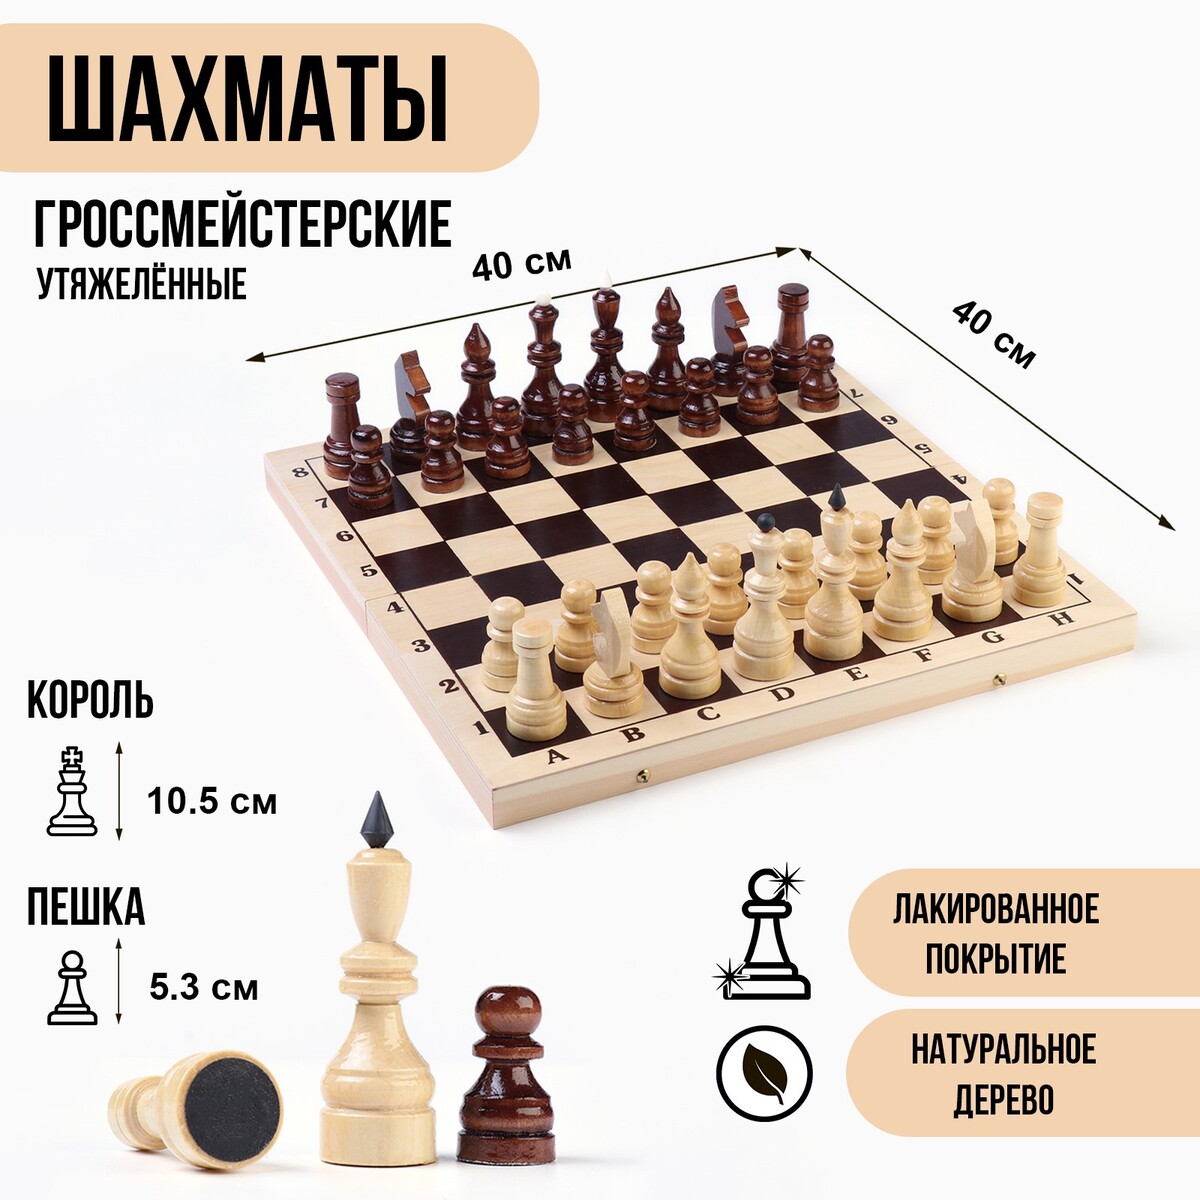 Шахматы гроссмейстерские, турнирные, утяжеленные, 40х40 см, король h=10.5 см, пешка 5.3 см шахматы деревянные гроссмейстерские турнирные король h 10 5 см пешка h 5 3 см